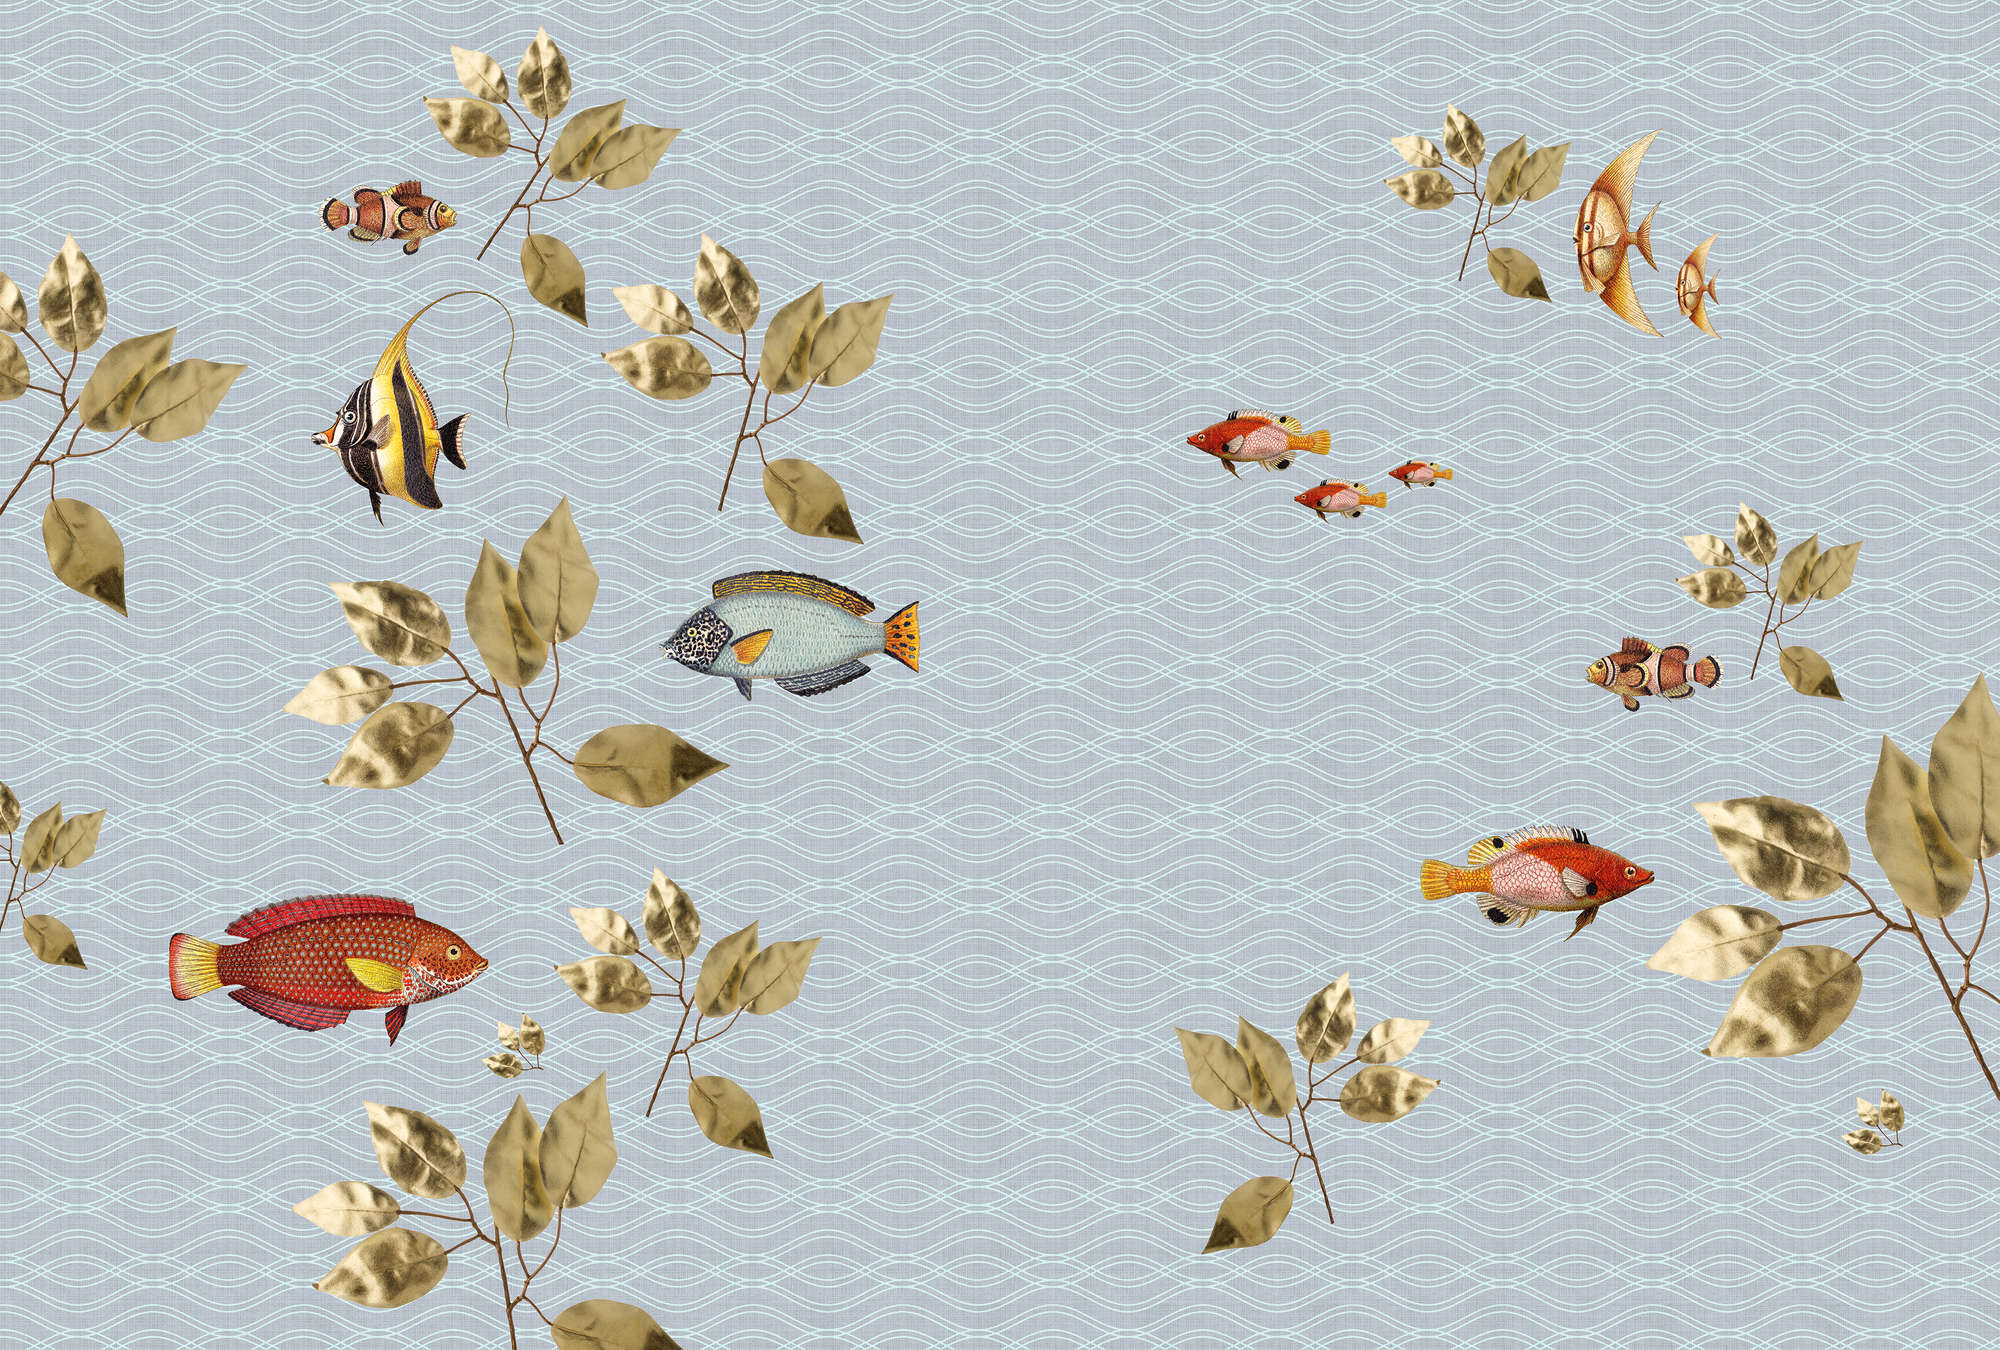             Brilliant fish 1 - Carta da parati a forma di pesce volante con struttura in lino naturale - Blu | Premium smooth fleece
        